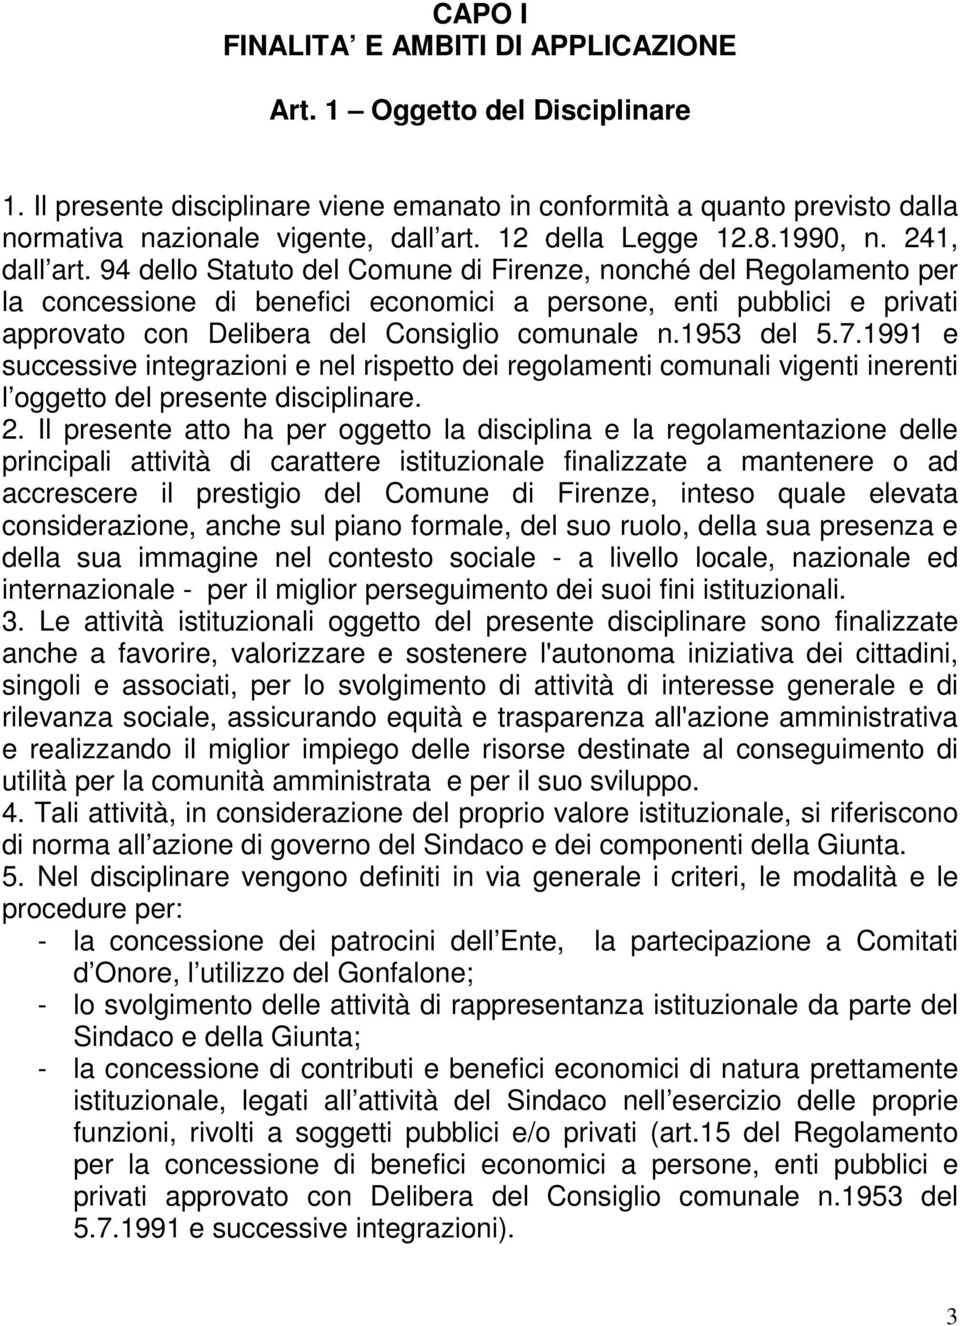 94 dello Statuto del Comune di Firenze, nonché del Regolamento per la concessione di benefici economici a persone, enti pubblici e privati approvato con Delibera del Consiglio comunale n.1953 del 5.7.